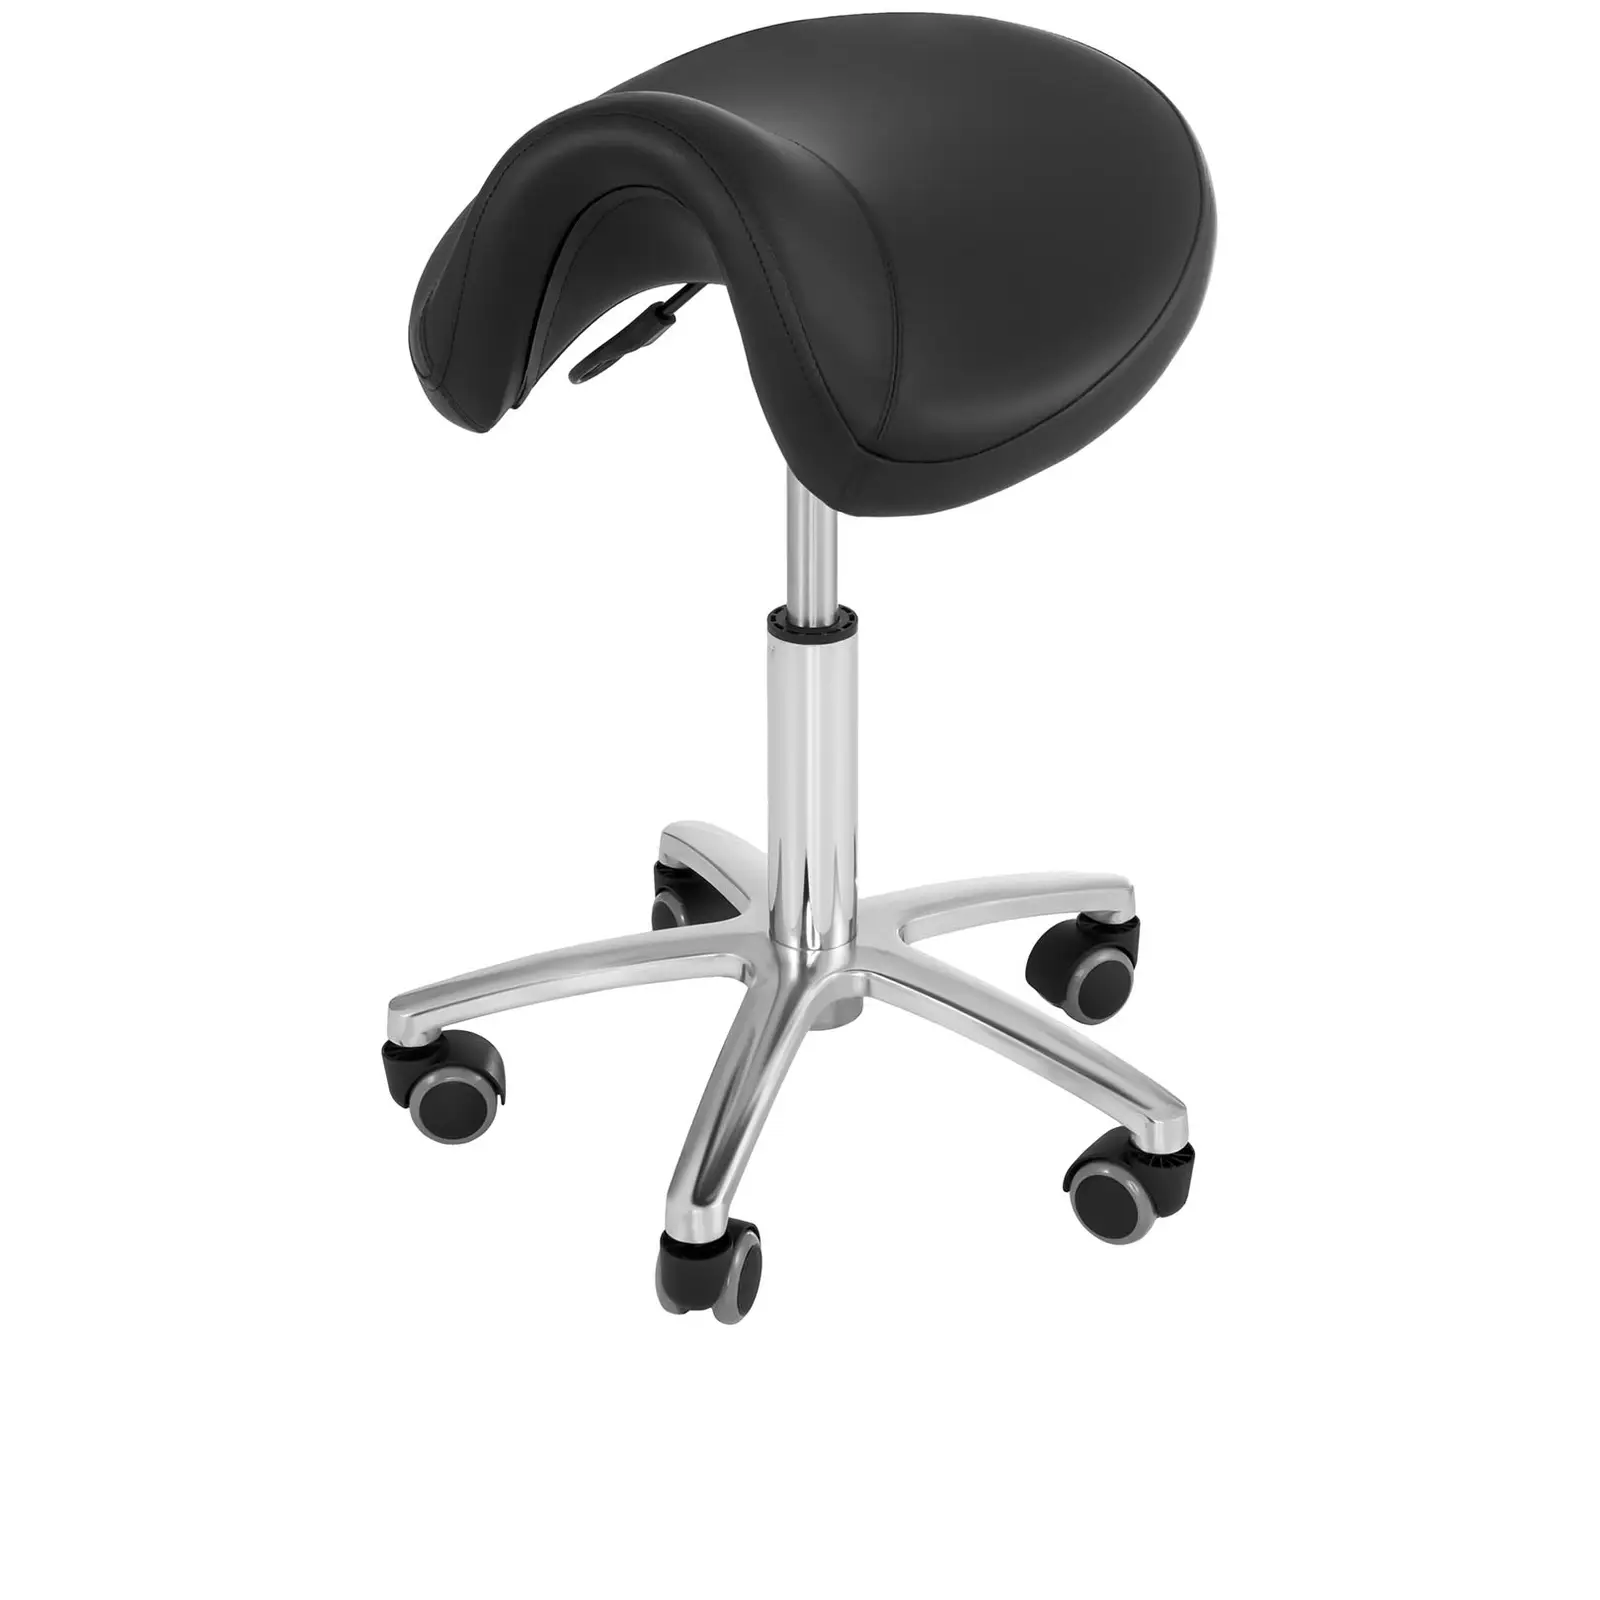 Fodrász szék - 480-625 mm - 150 kg - Fekete